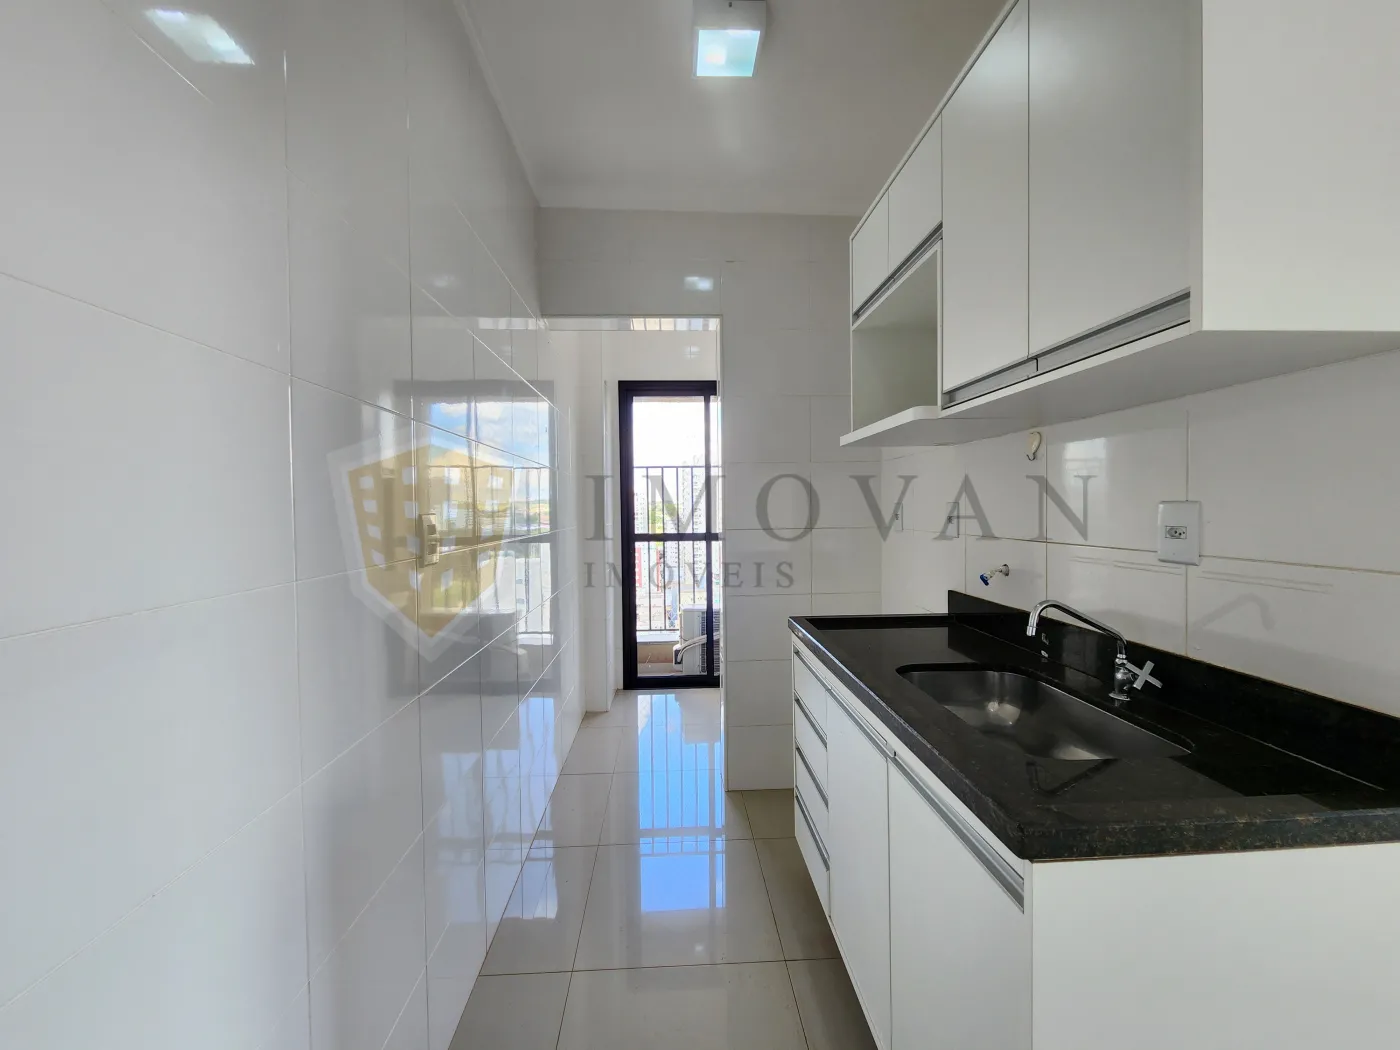 Comprar Apartamento / Padrão em Ribeirão Preto R$ 310.000,00 - Foto 2